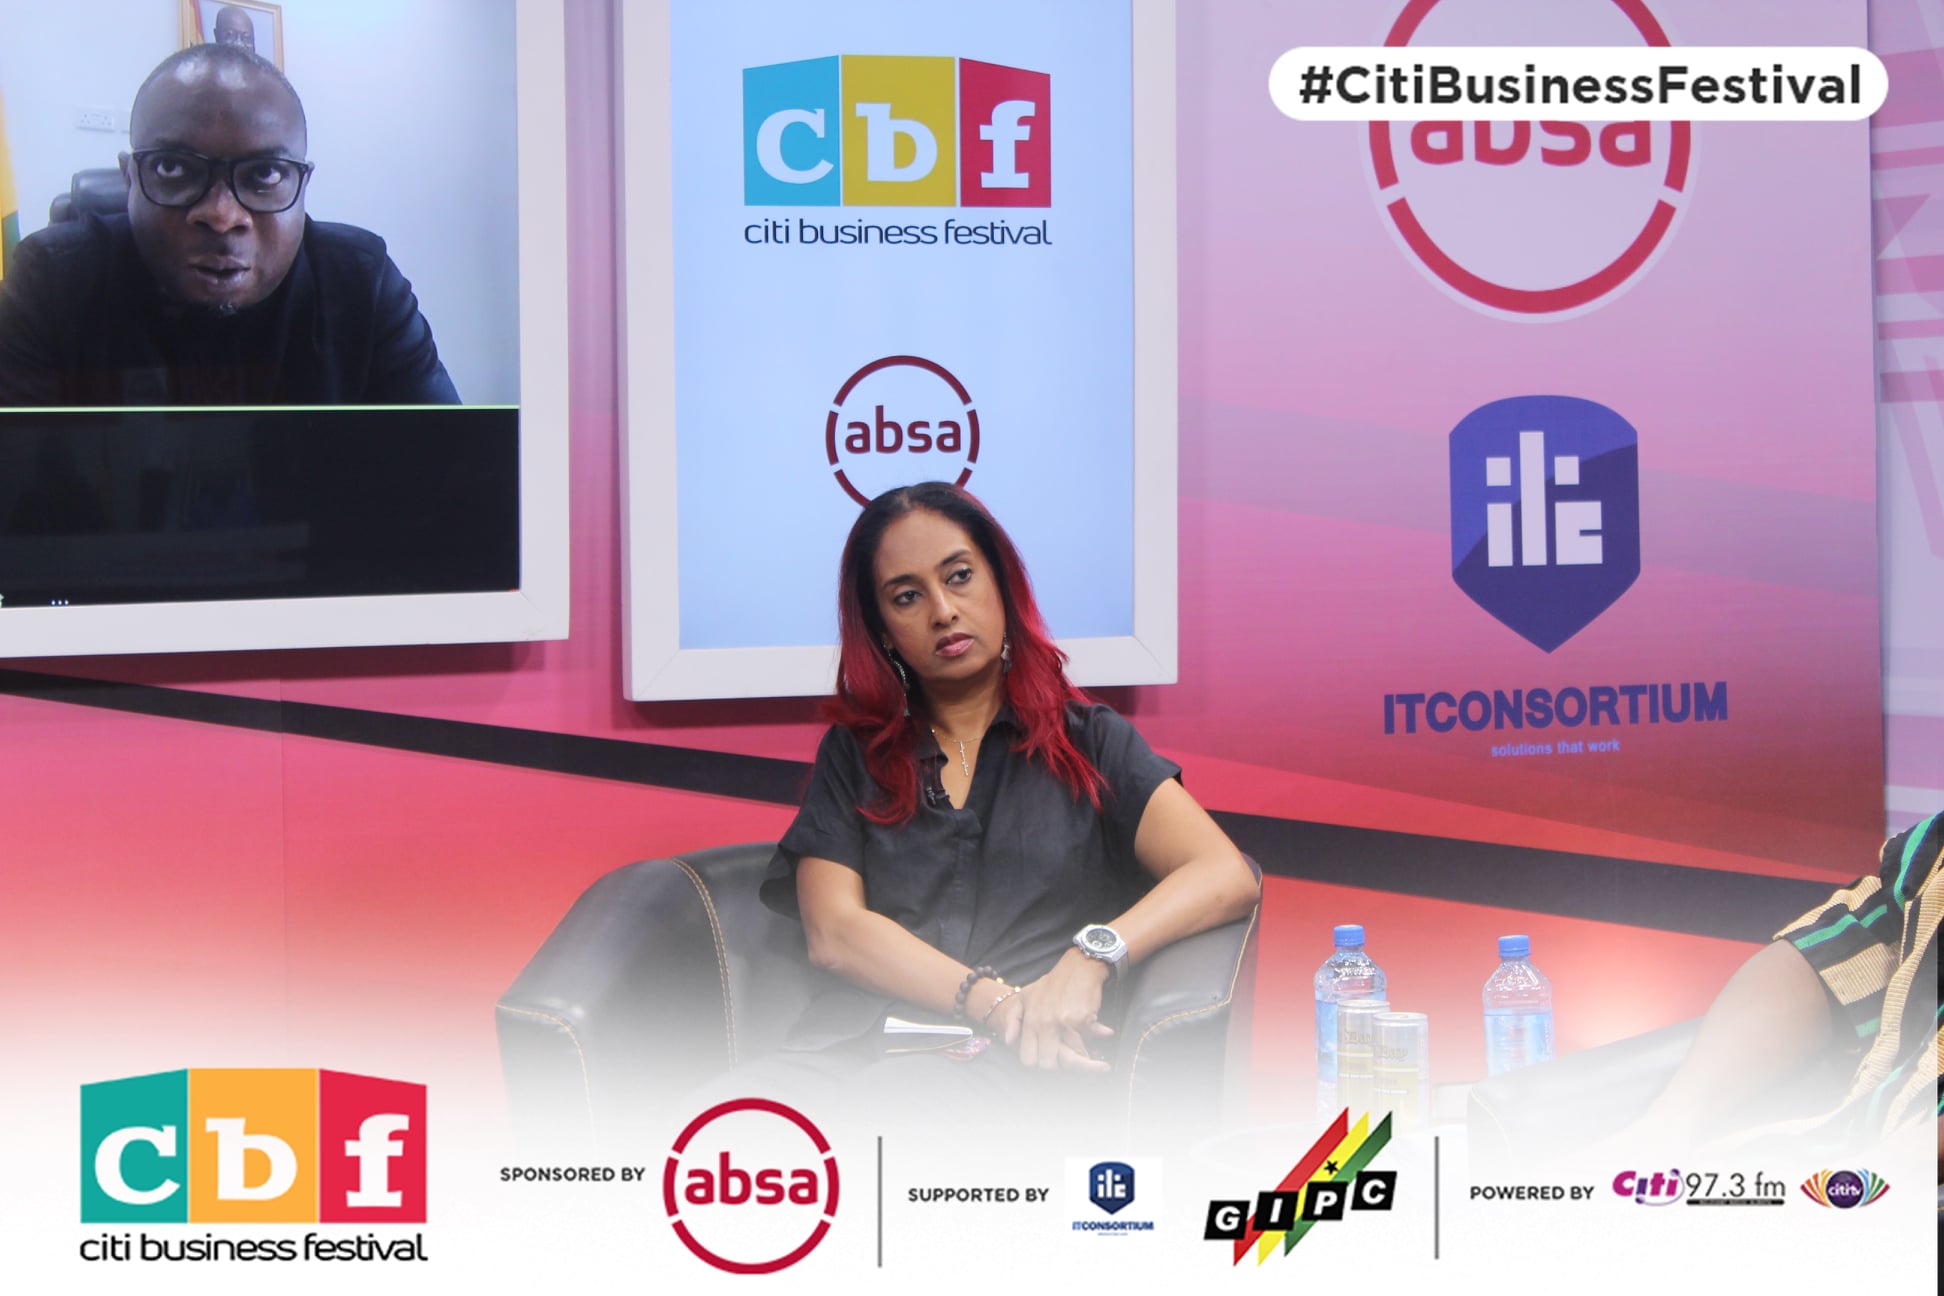 #CitiBusinessFestival panellists discuss AfCFTA opportunities in 4th virtual forum